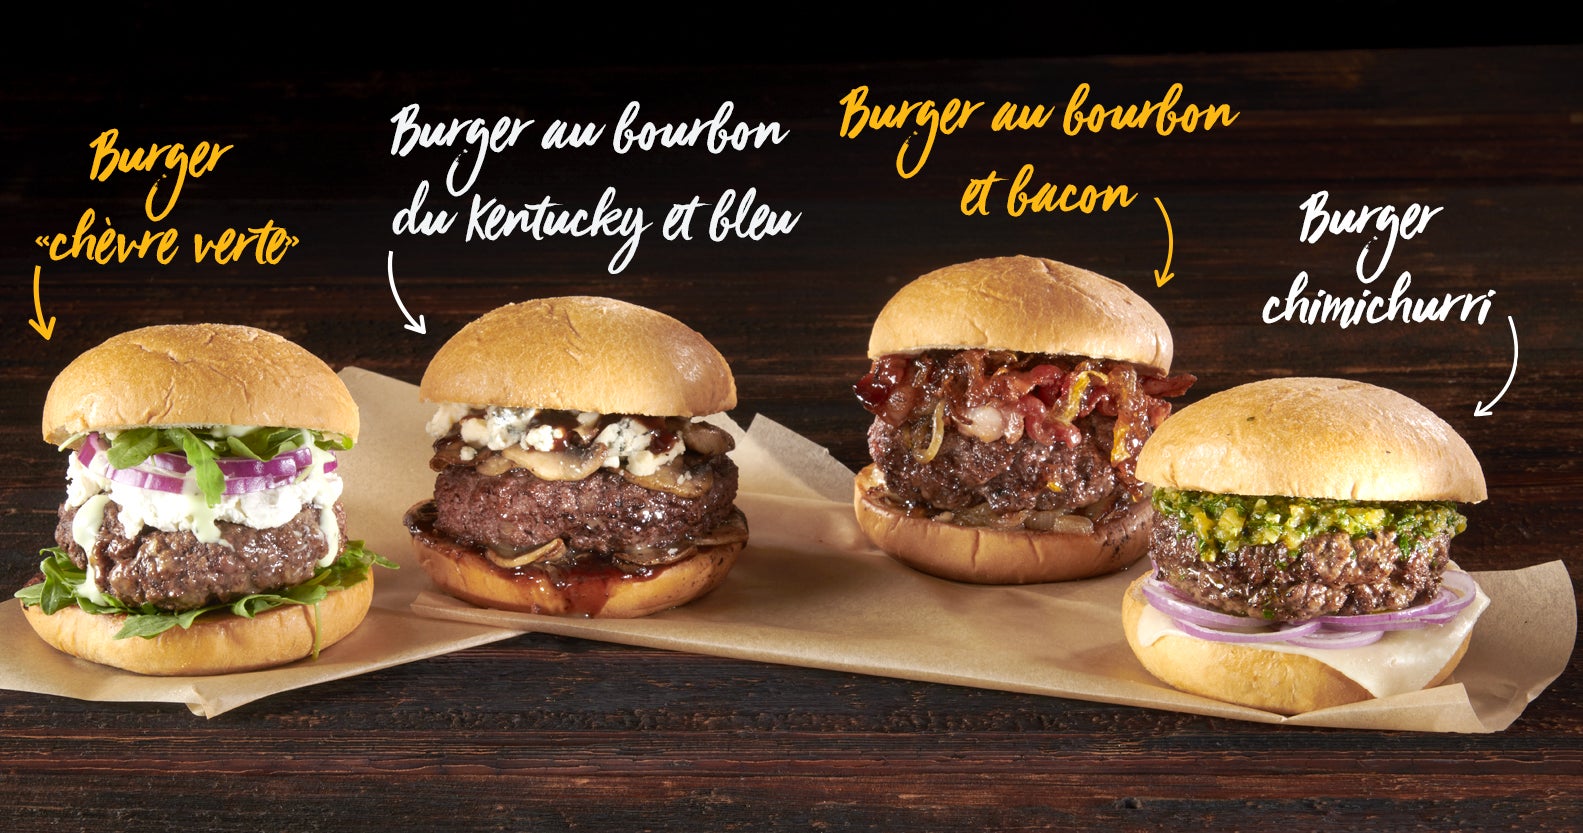 Four burgers: The Green Goat Burger, Kentucky Bourbon and Blue Burger, Bourbon and Bacon Burger, Chimichurri Burger.